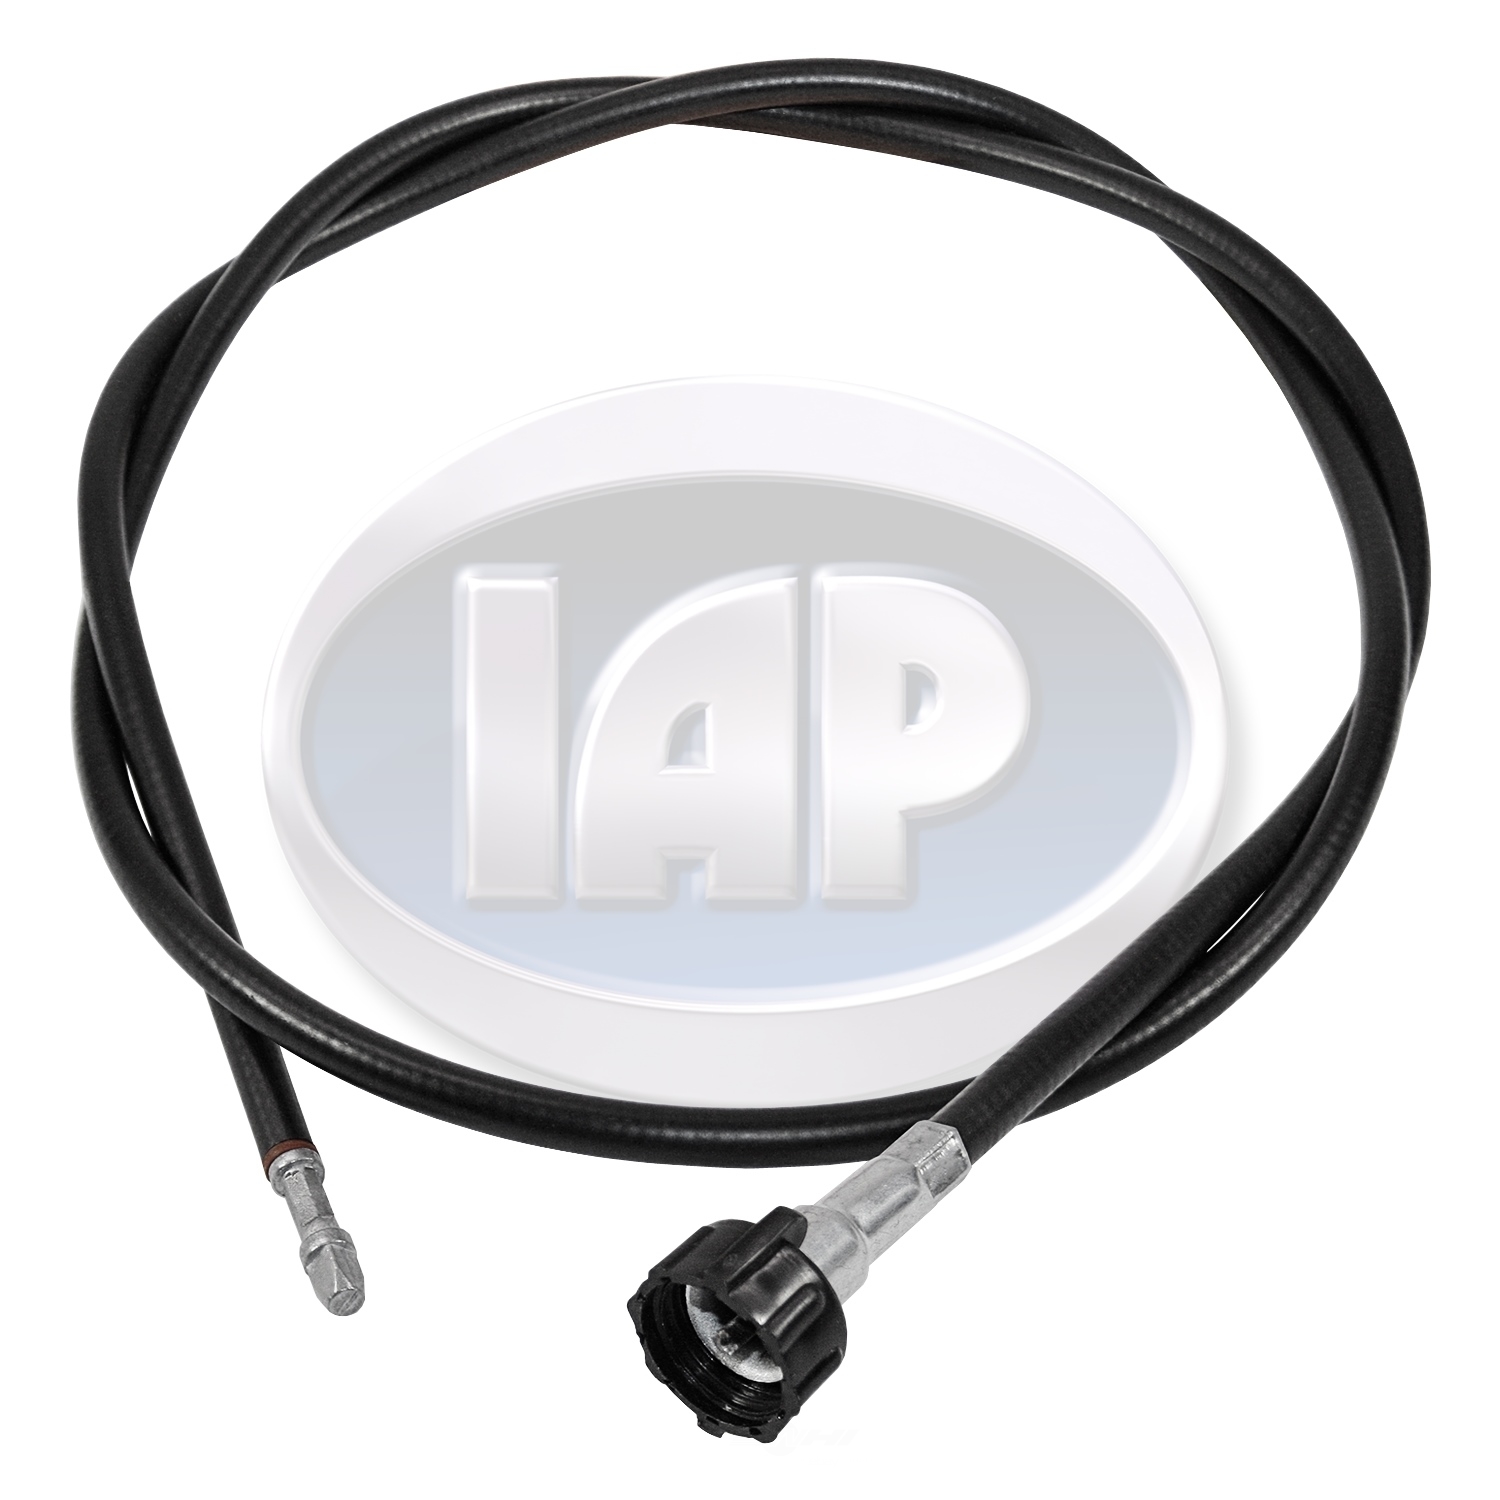 IAP/KUHLTEK MOTORWERKS - Speedometer Cable - KMS 211957801F